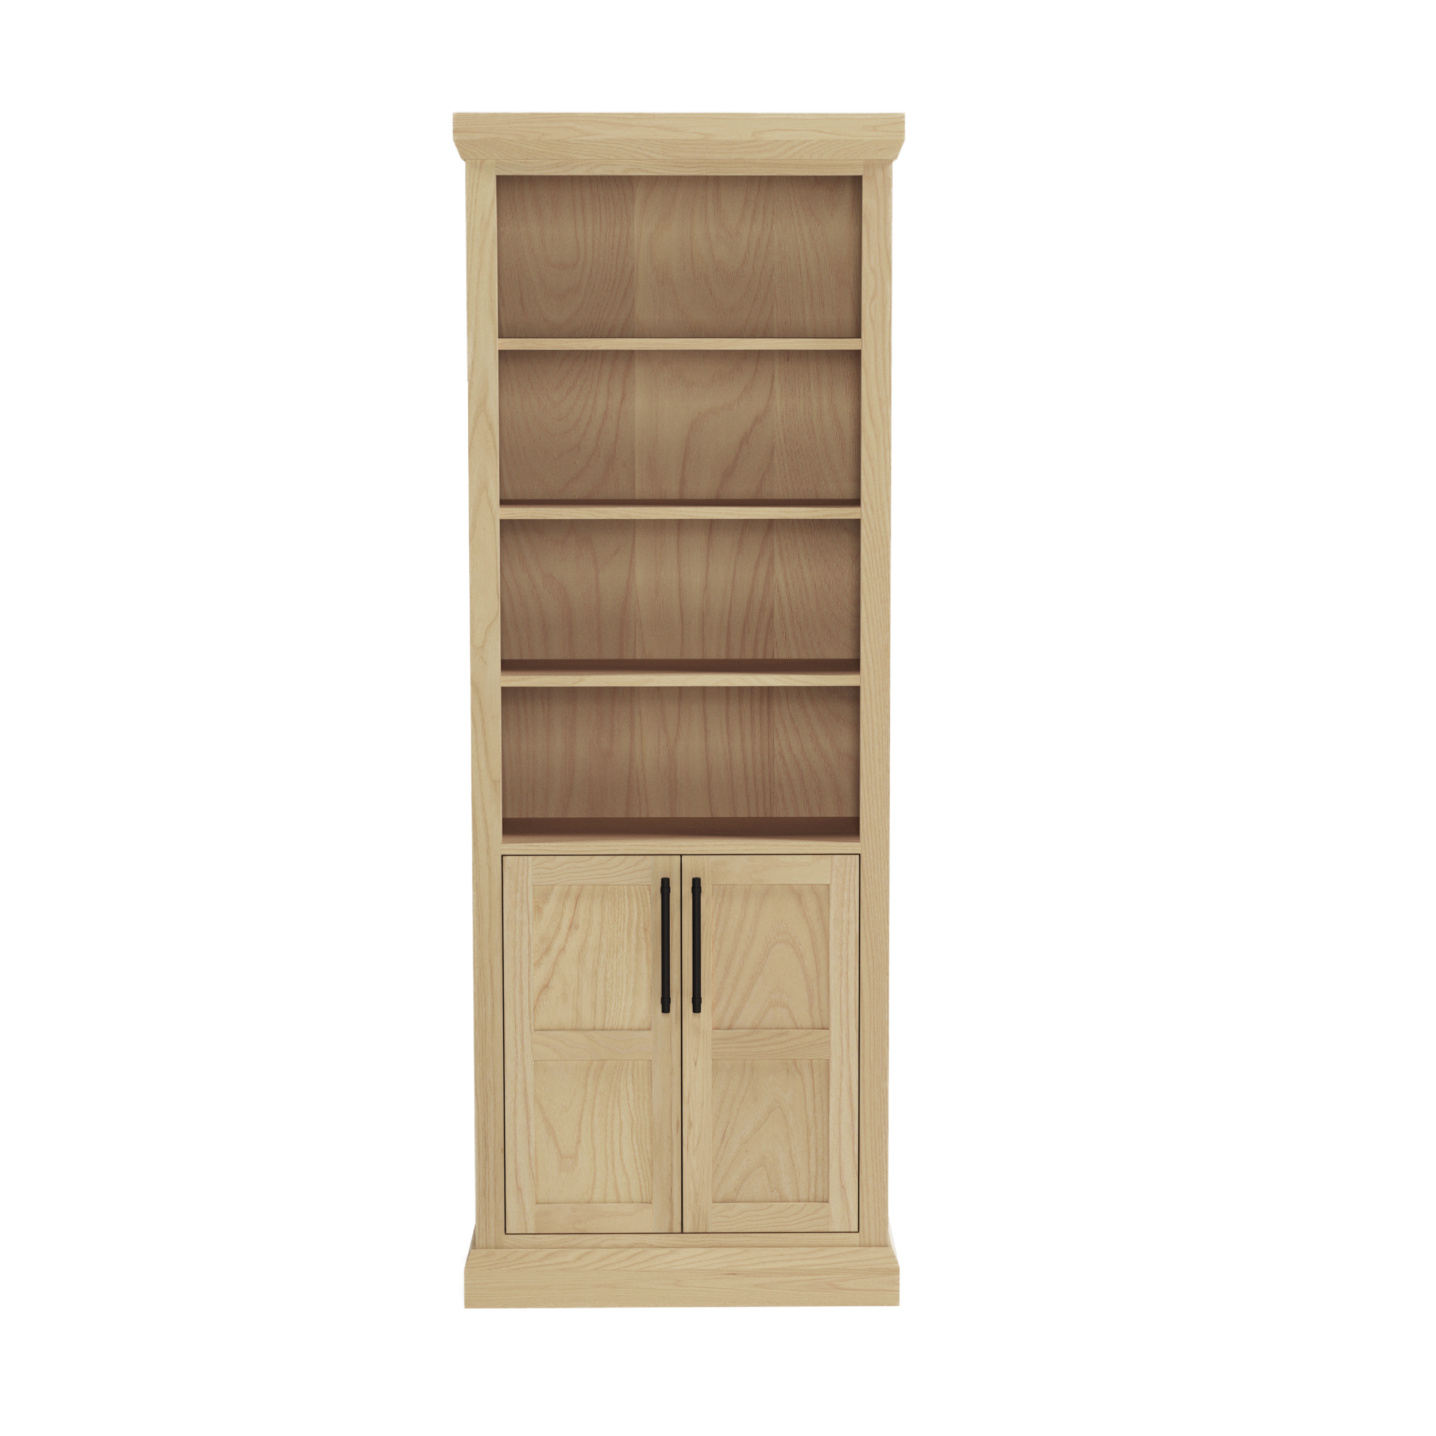 wooden bookshelf with 2 doors